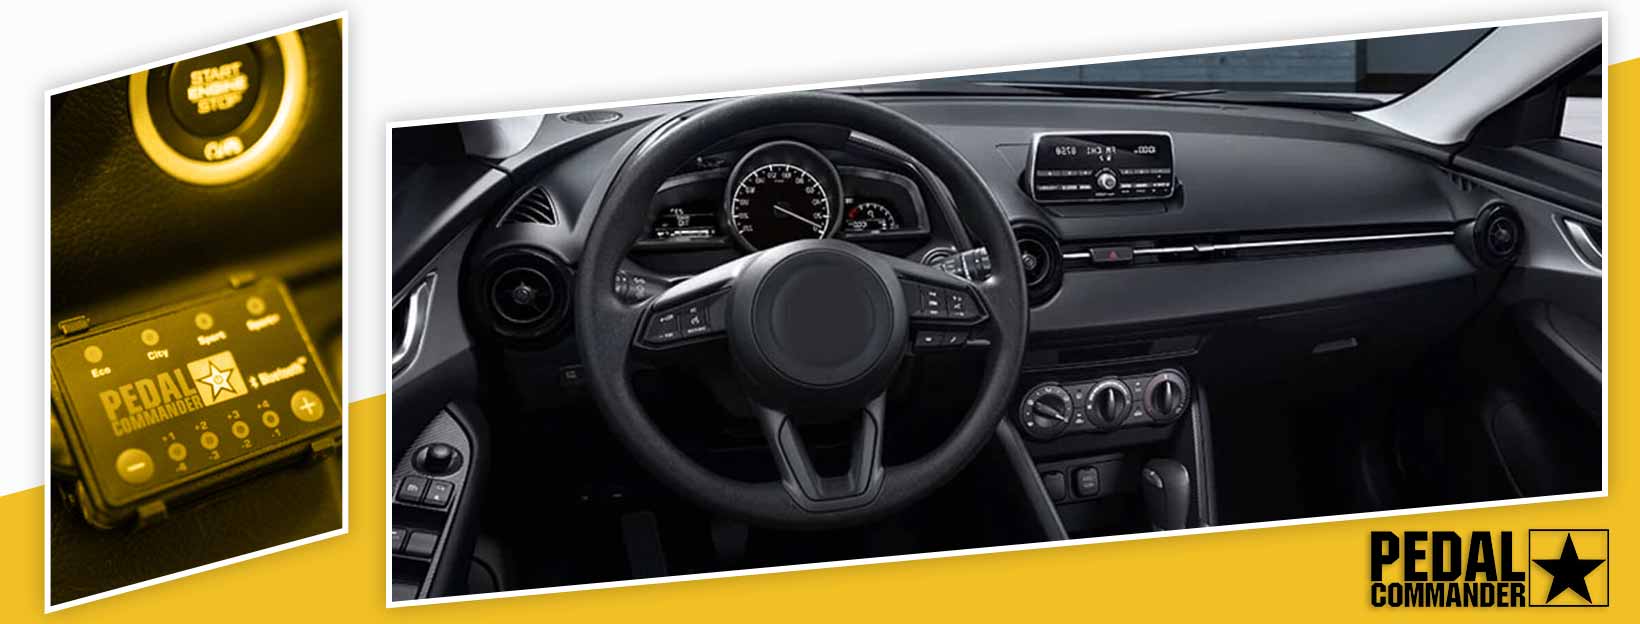 Pedal Commander for Mazda CX3 - interior